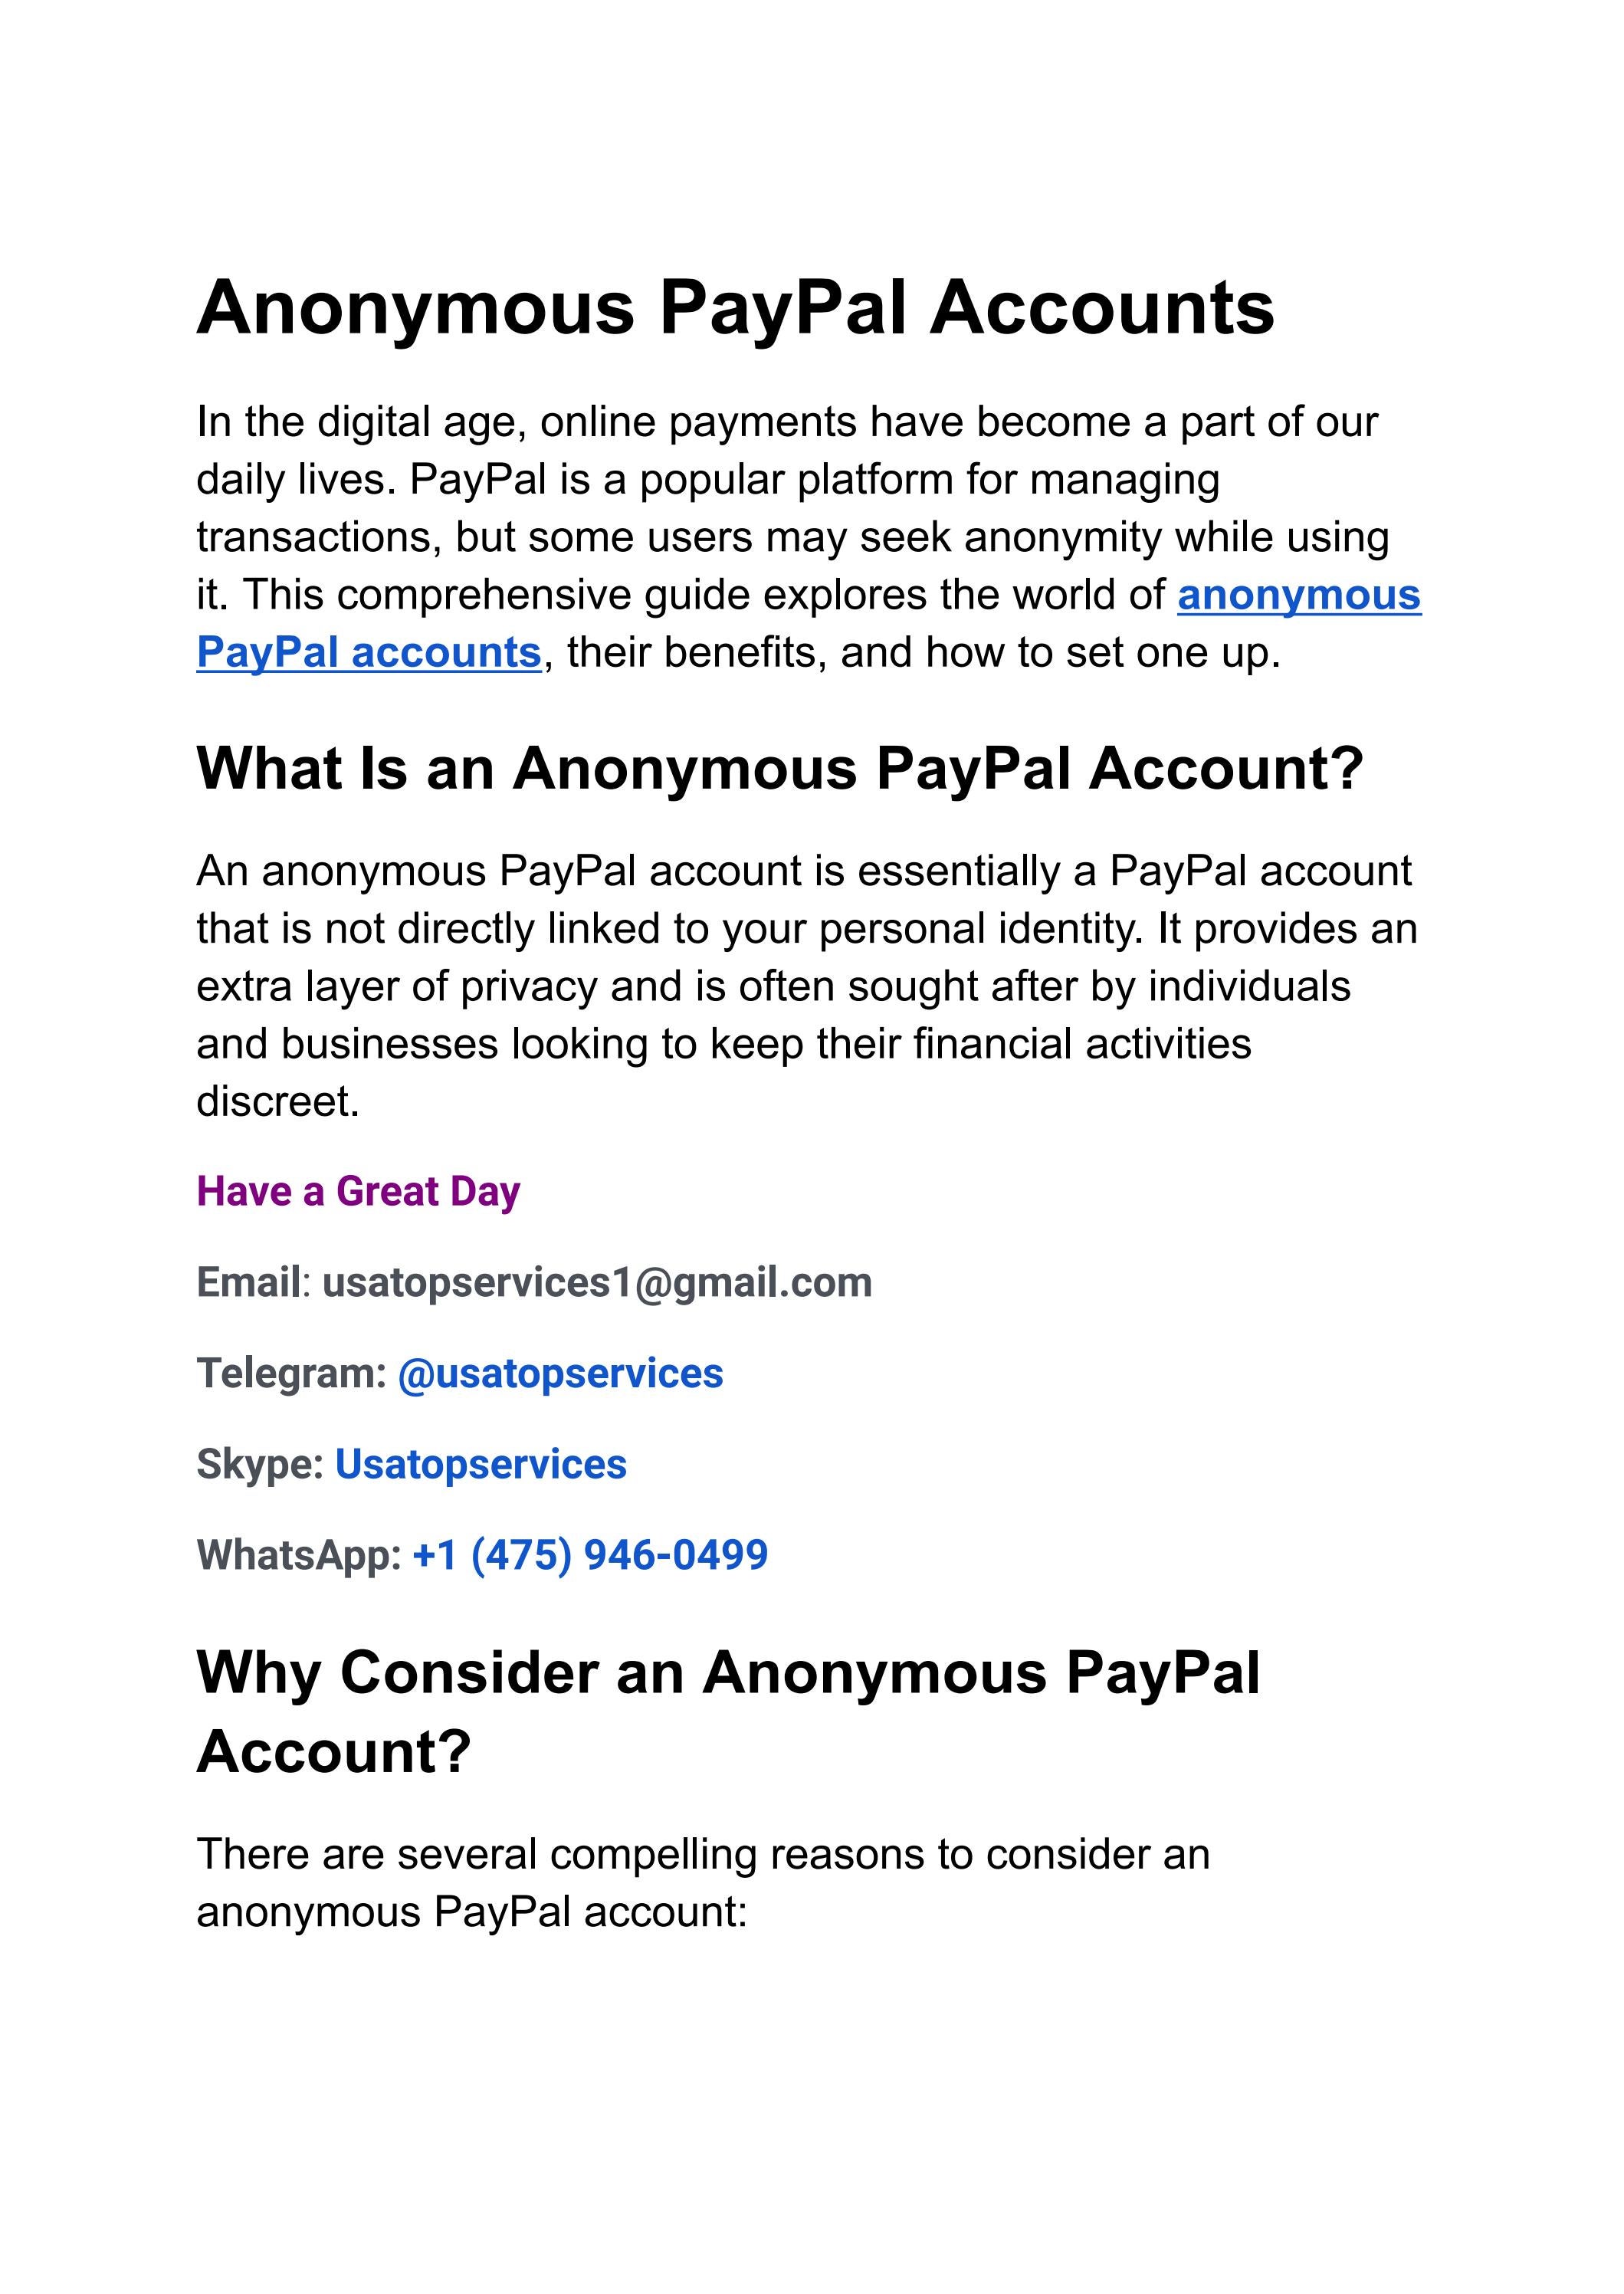 PayPal 14 - Wikipedia